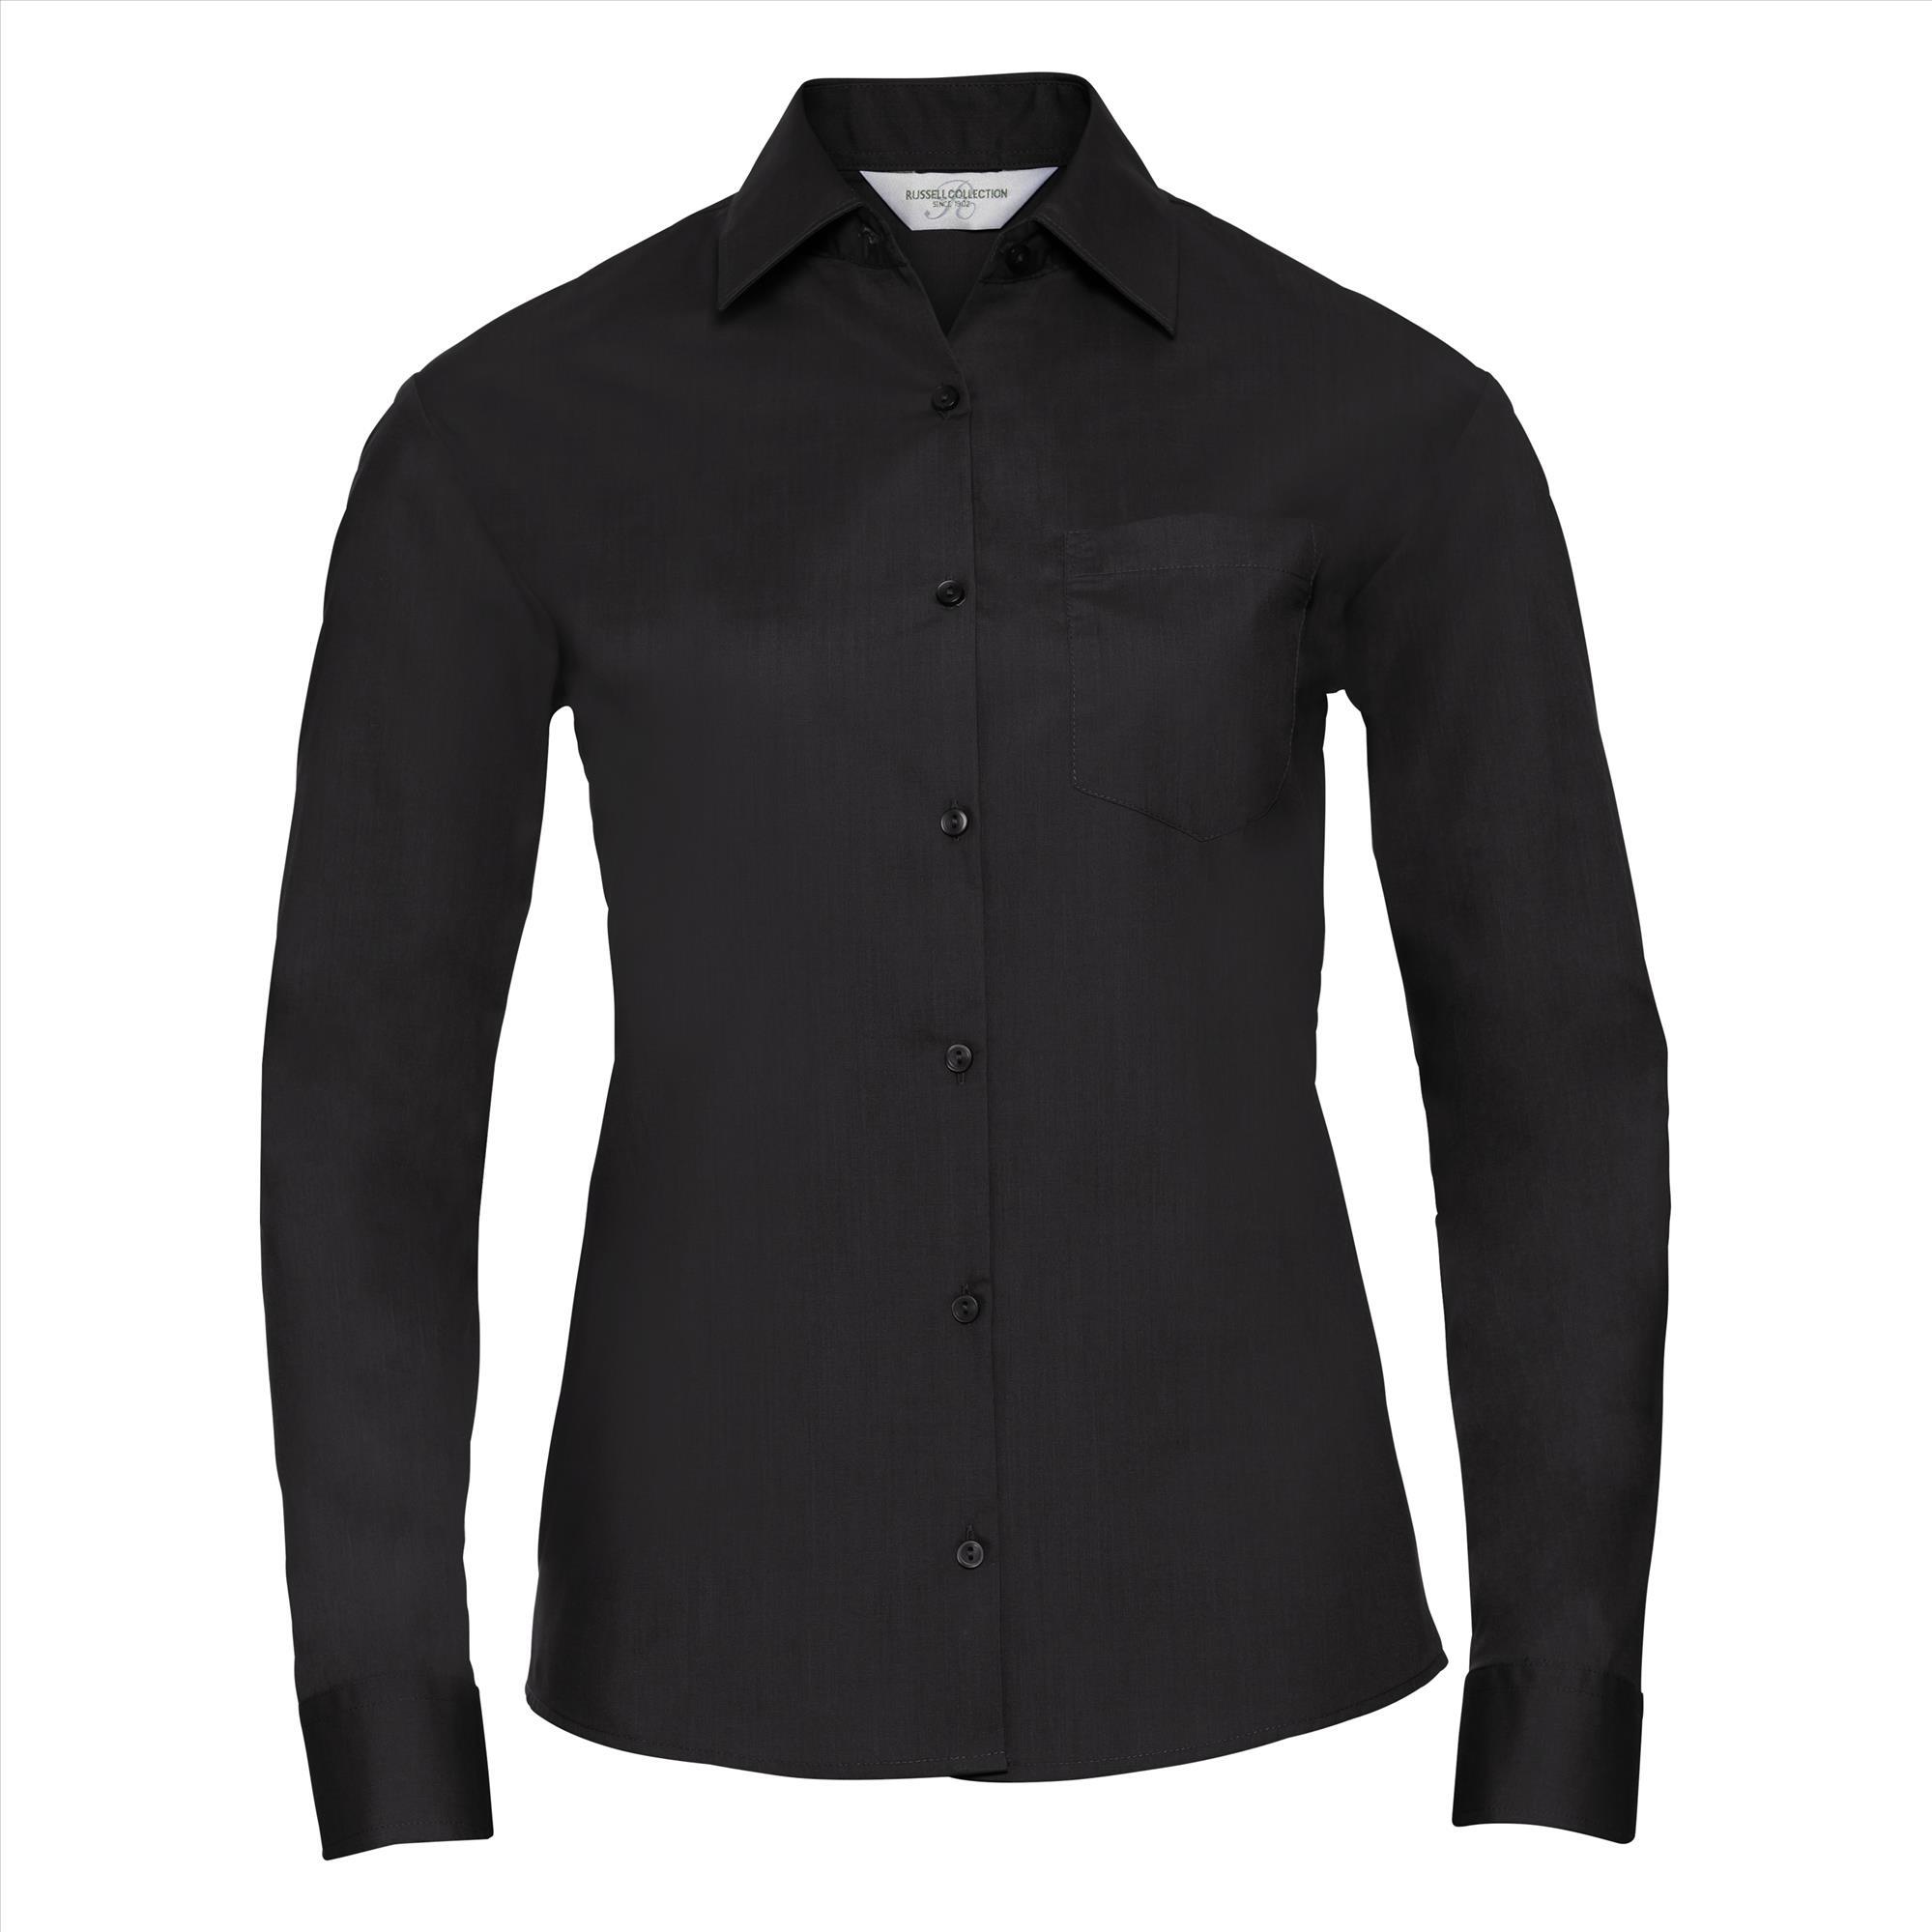 Dames blouse met klassieke kraag zwart perfect voor bedrukking bedrijfslogo